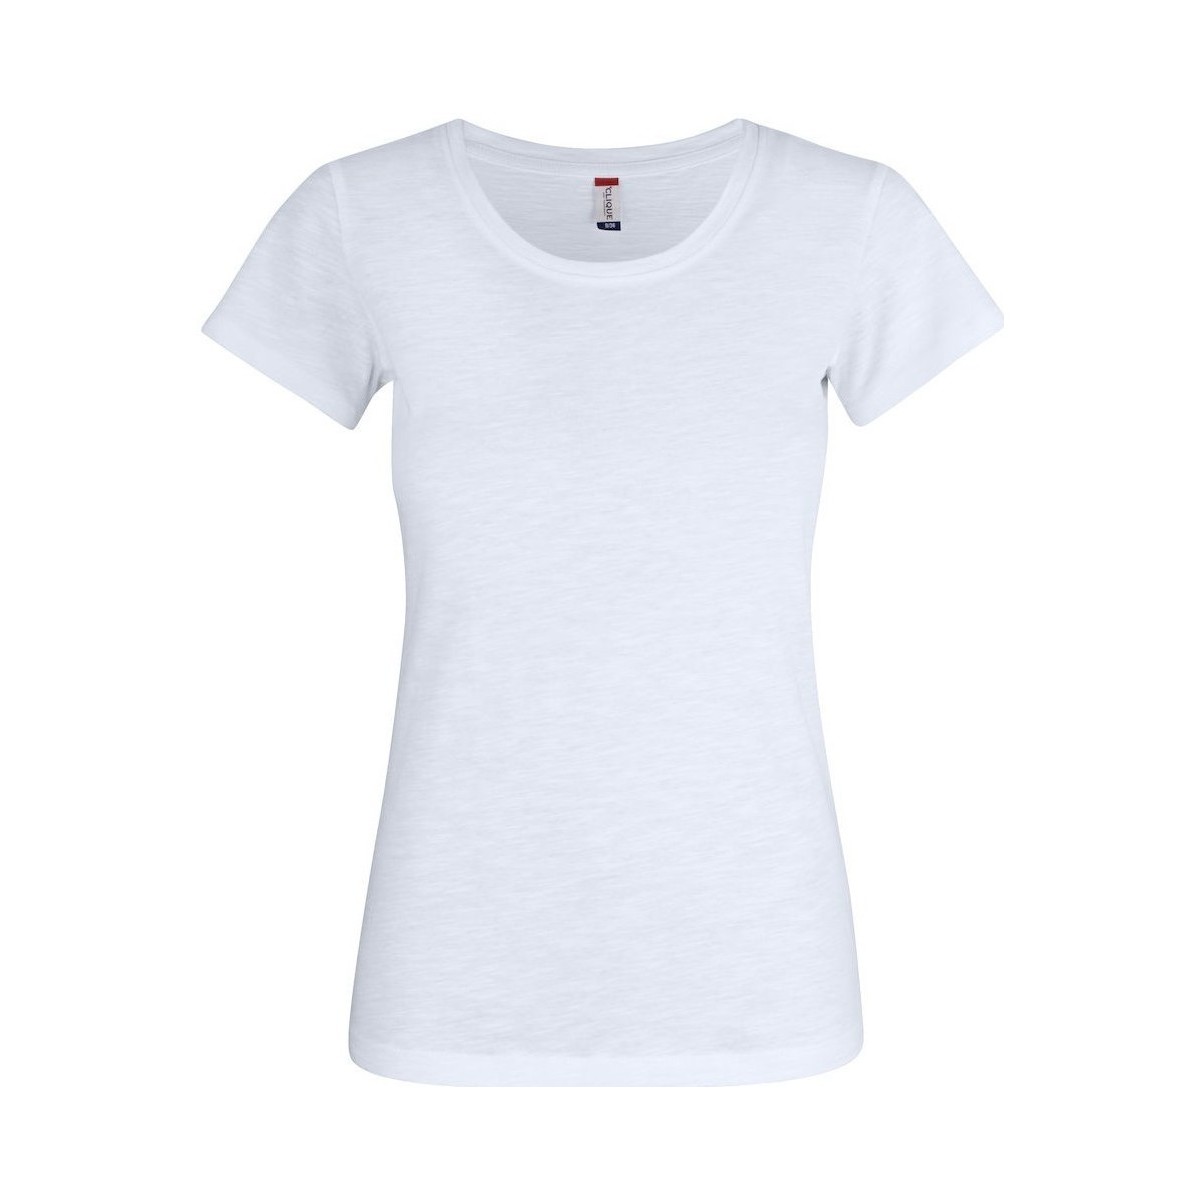 Vêtements Femme T-shirts manches longues C-Clique UB379 Blanc